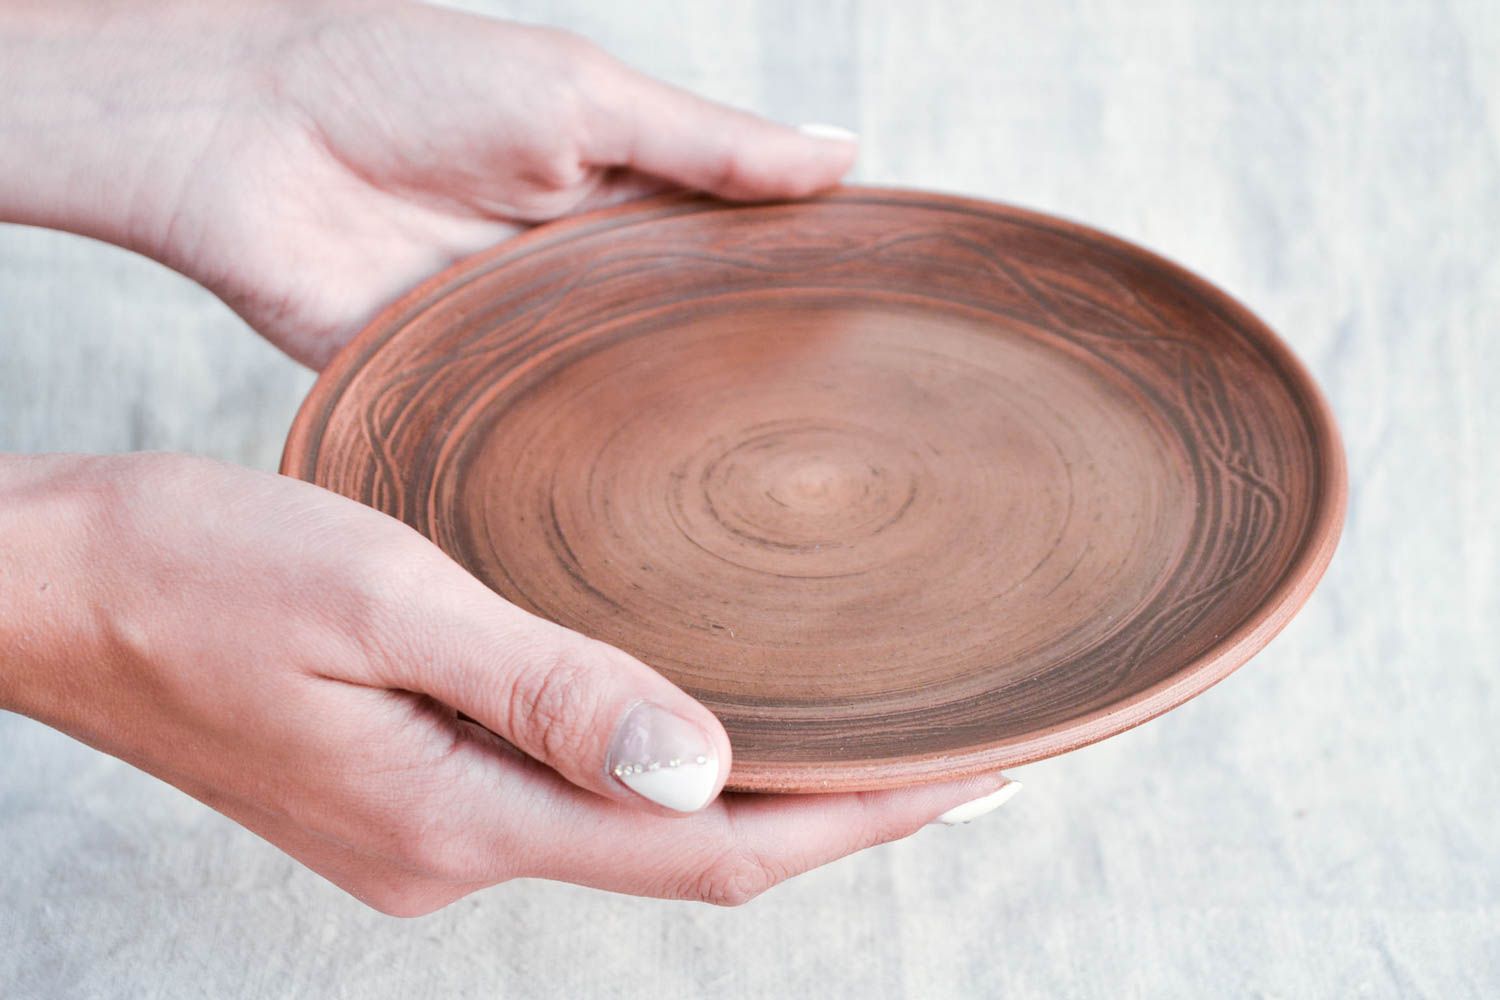 Handmade Keramik Teller Haus Dekor Design Teller Tisch Dekor klein flach schön foto 2